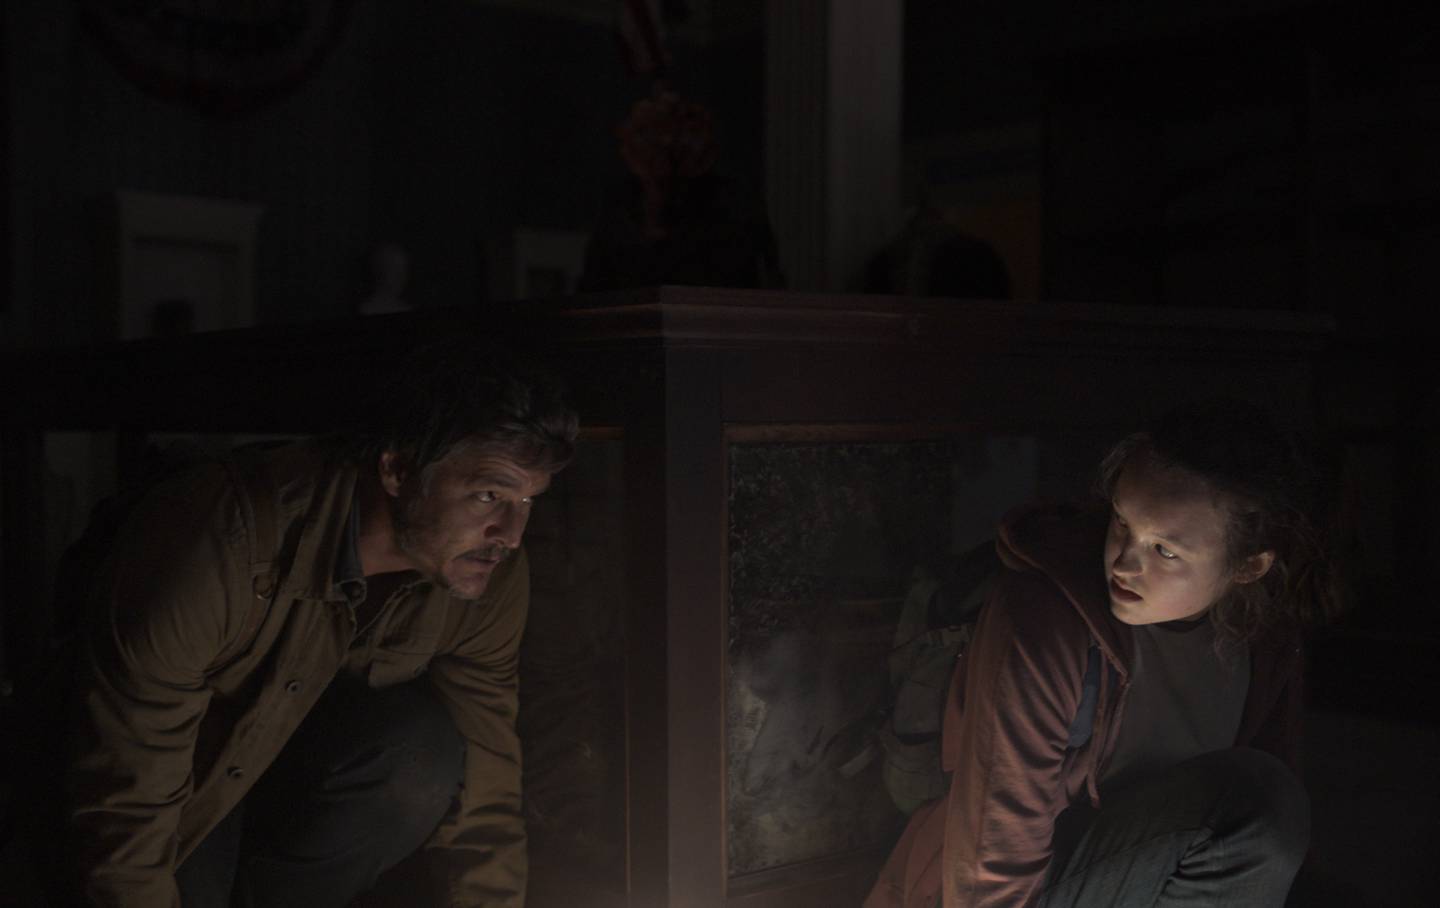 Joel og Ellie må bevege seg i mørket for å unngå farene de møter på veien, i TV-serien som i spillet den er basert på.